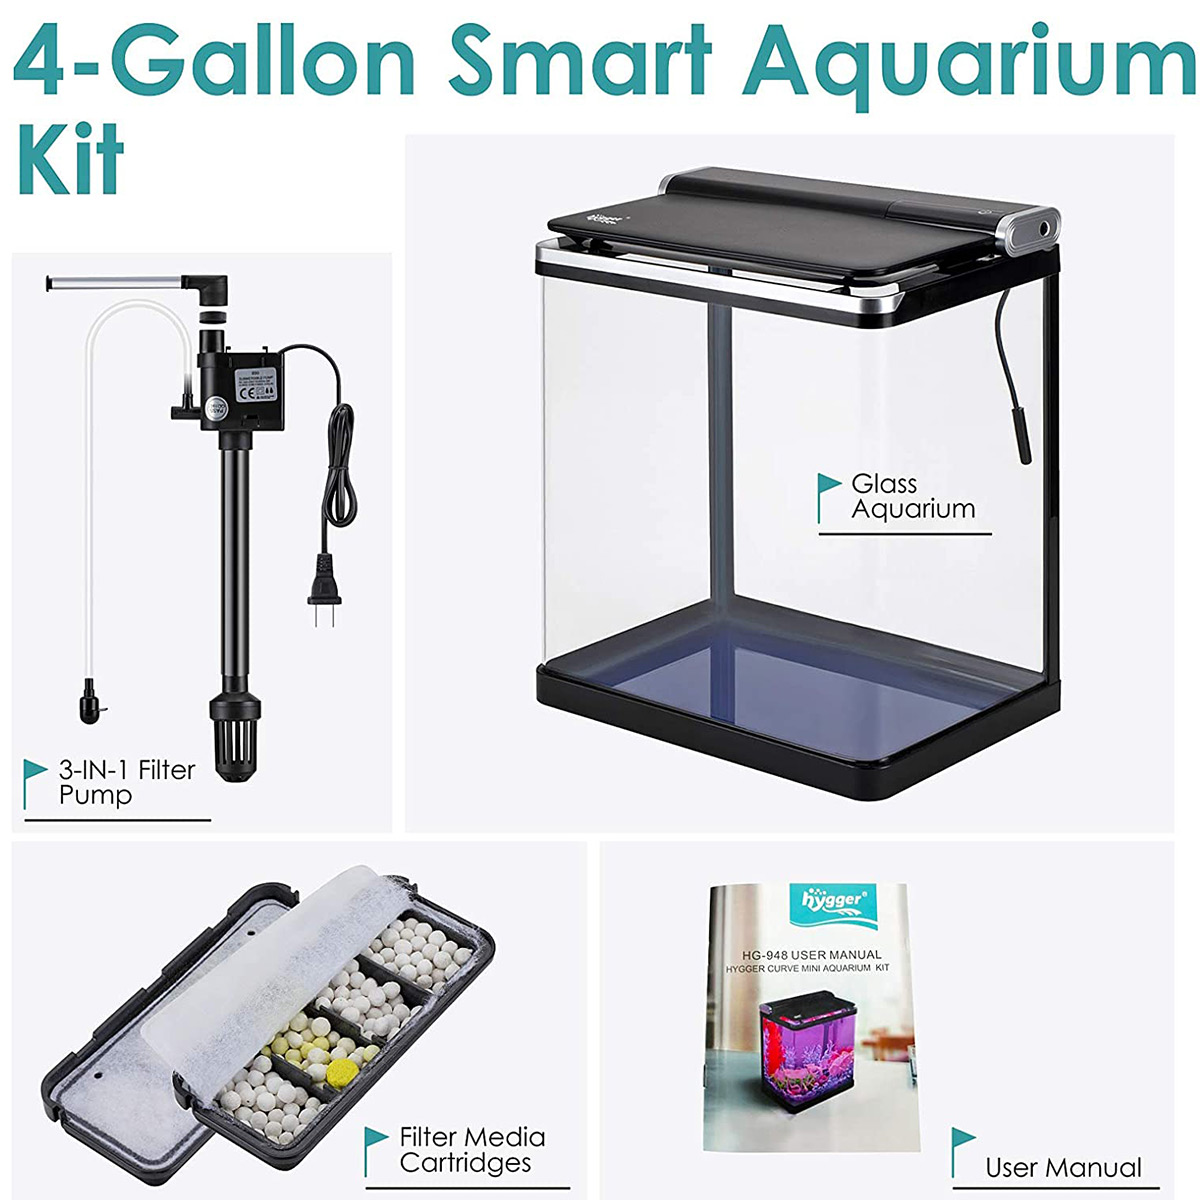  hygger Mini Aquarium Air Pump Kit Small Fish Tank Air